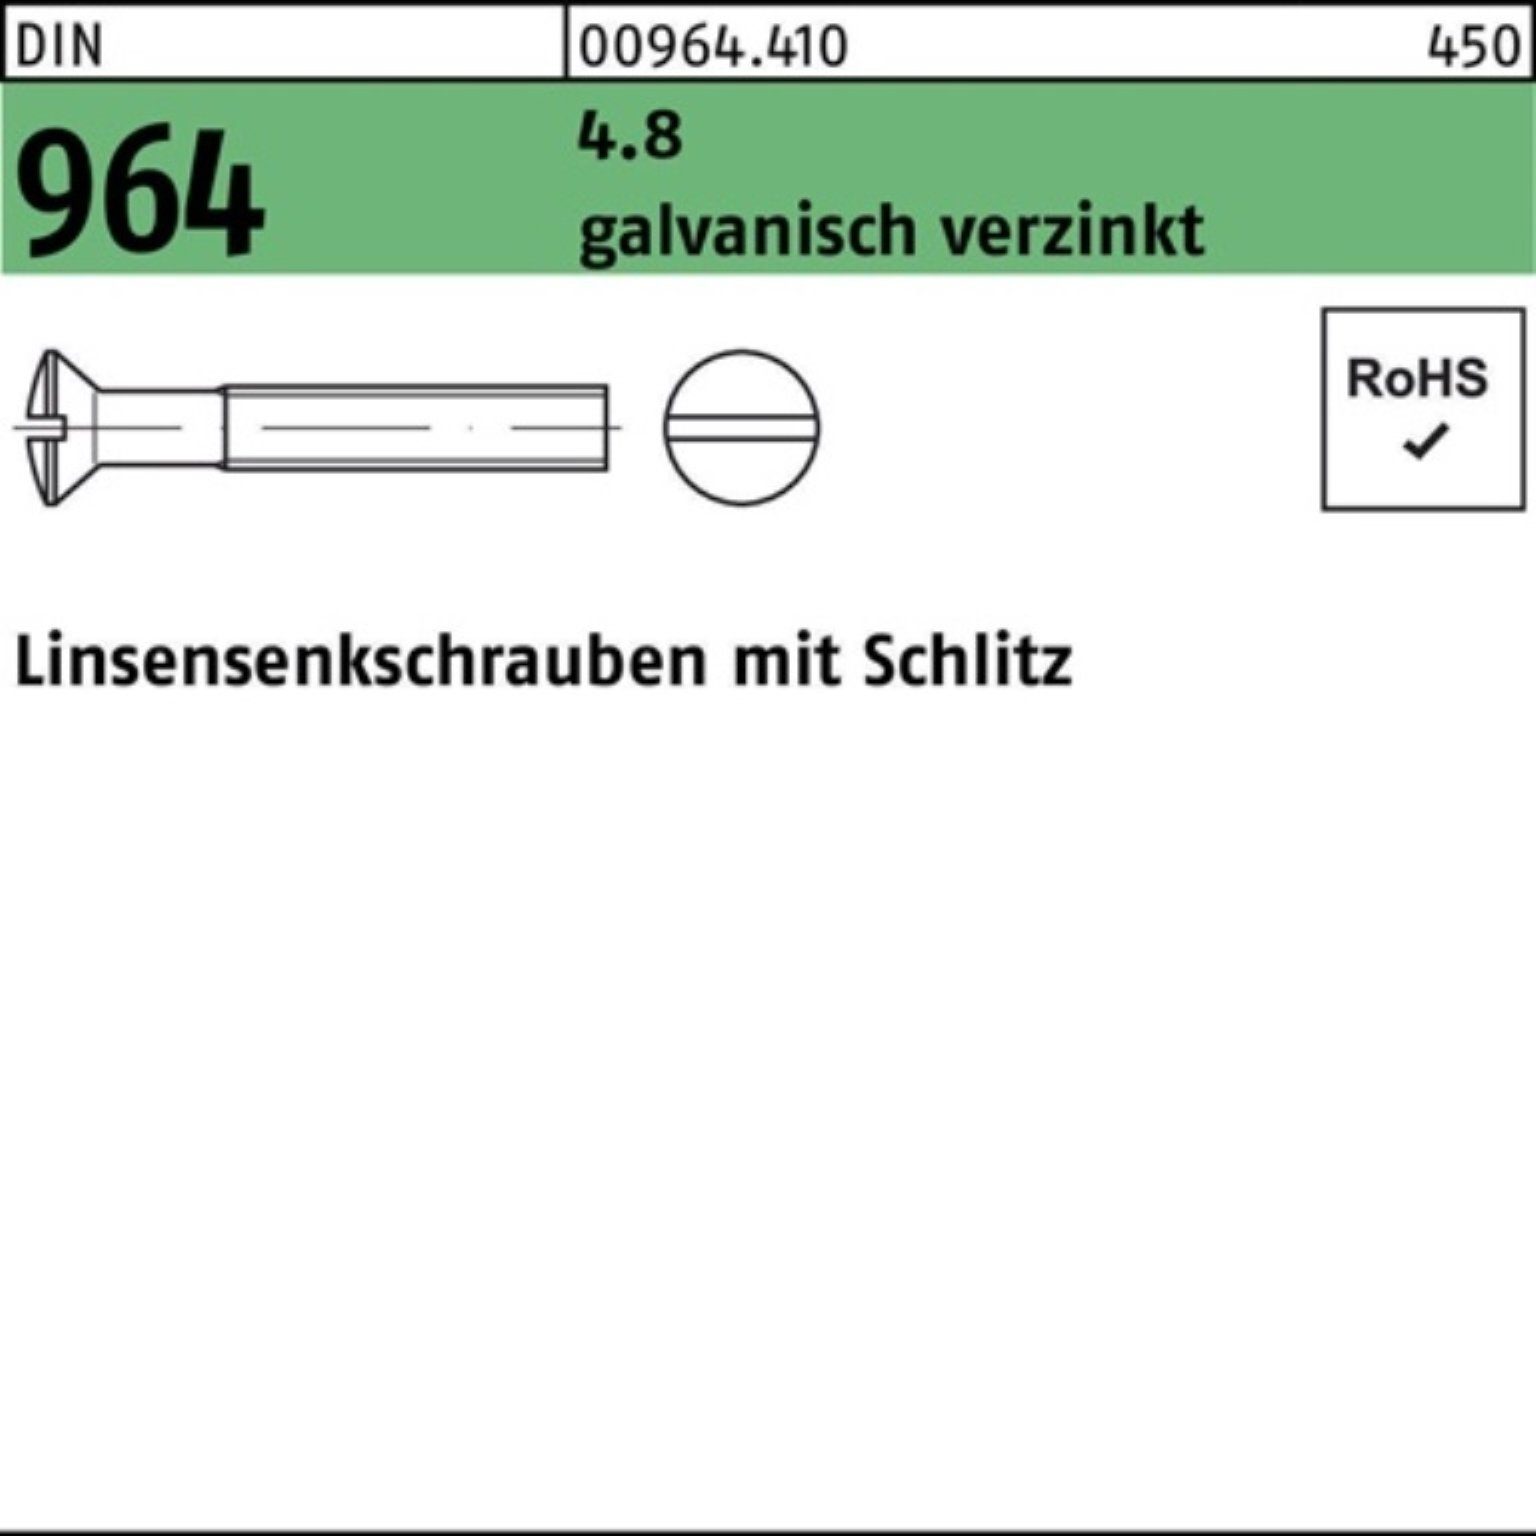 Reyher Linsenschraube 200er Schlitz 25 20 M3x Pack 4.8 964 galv.verz. Linsensenkschraube DIN